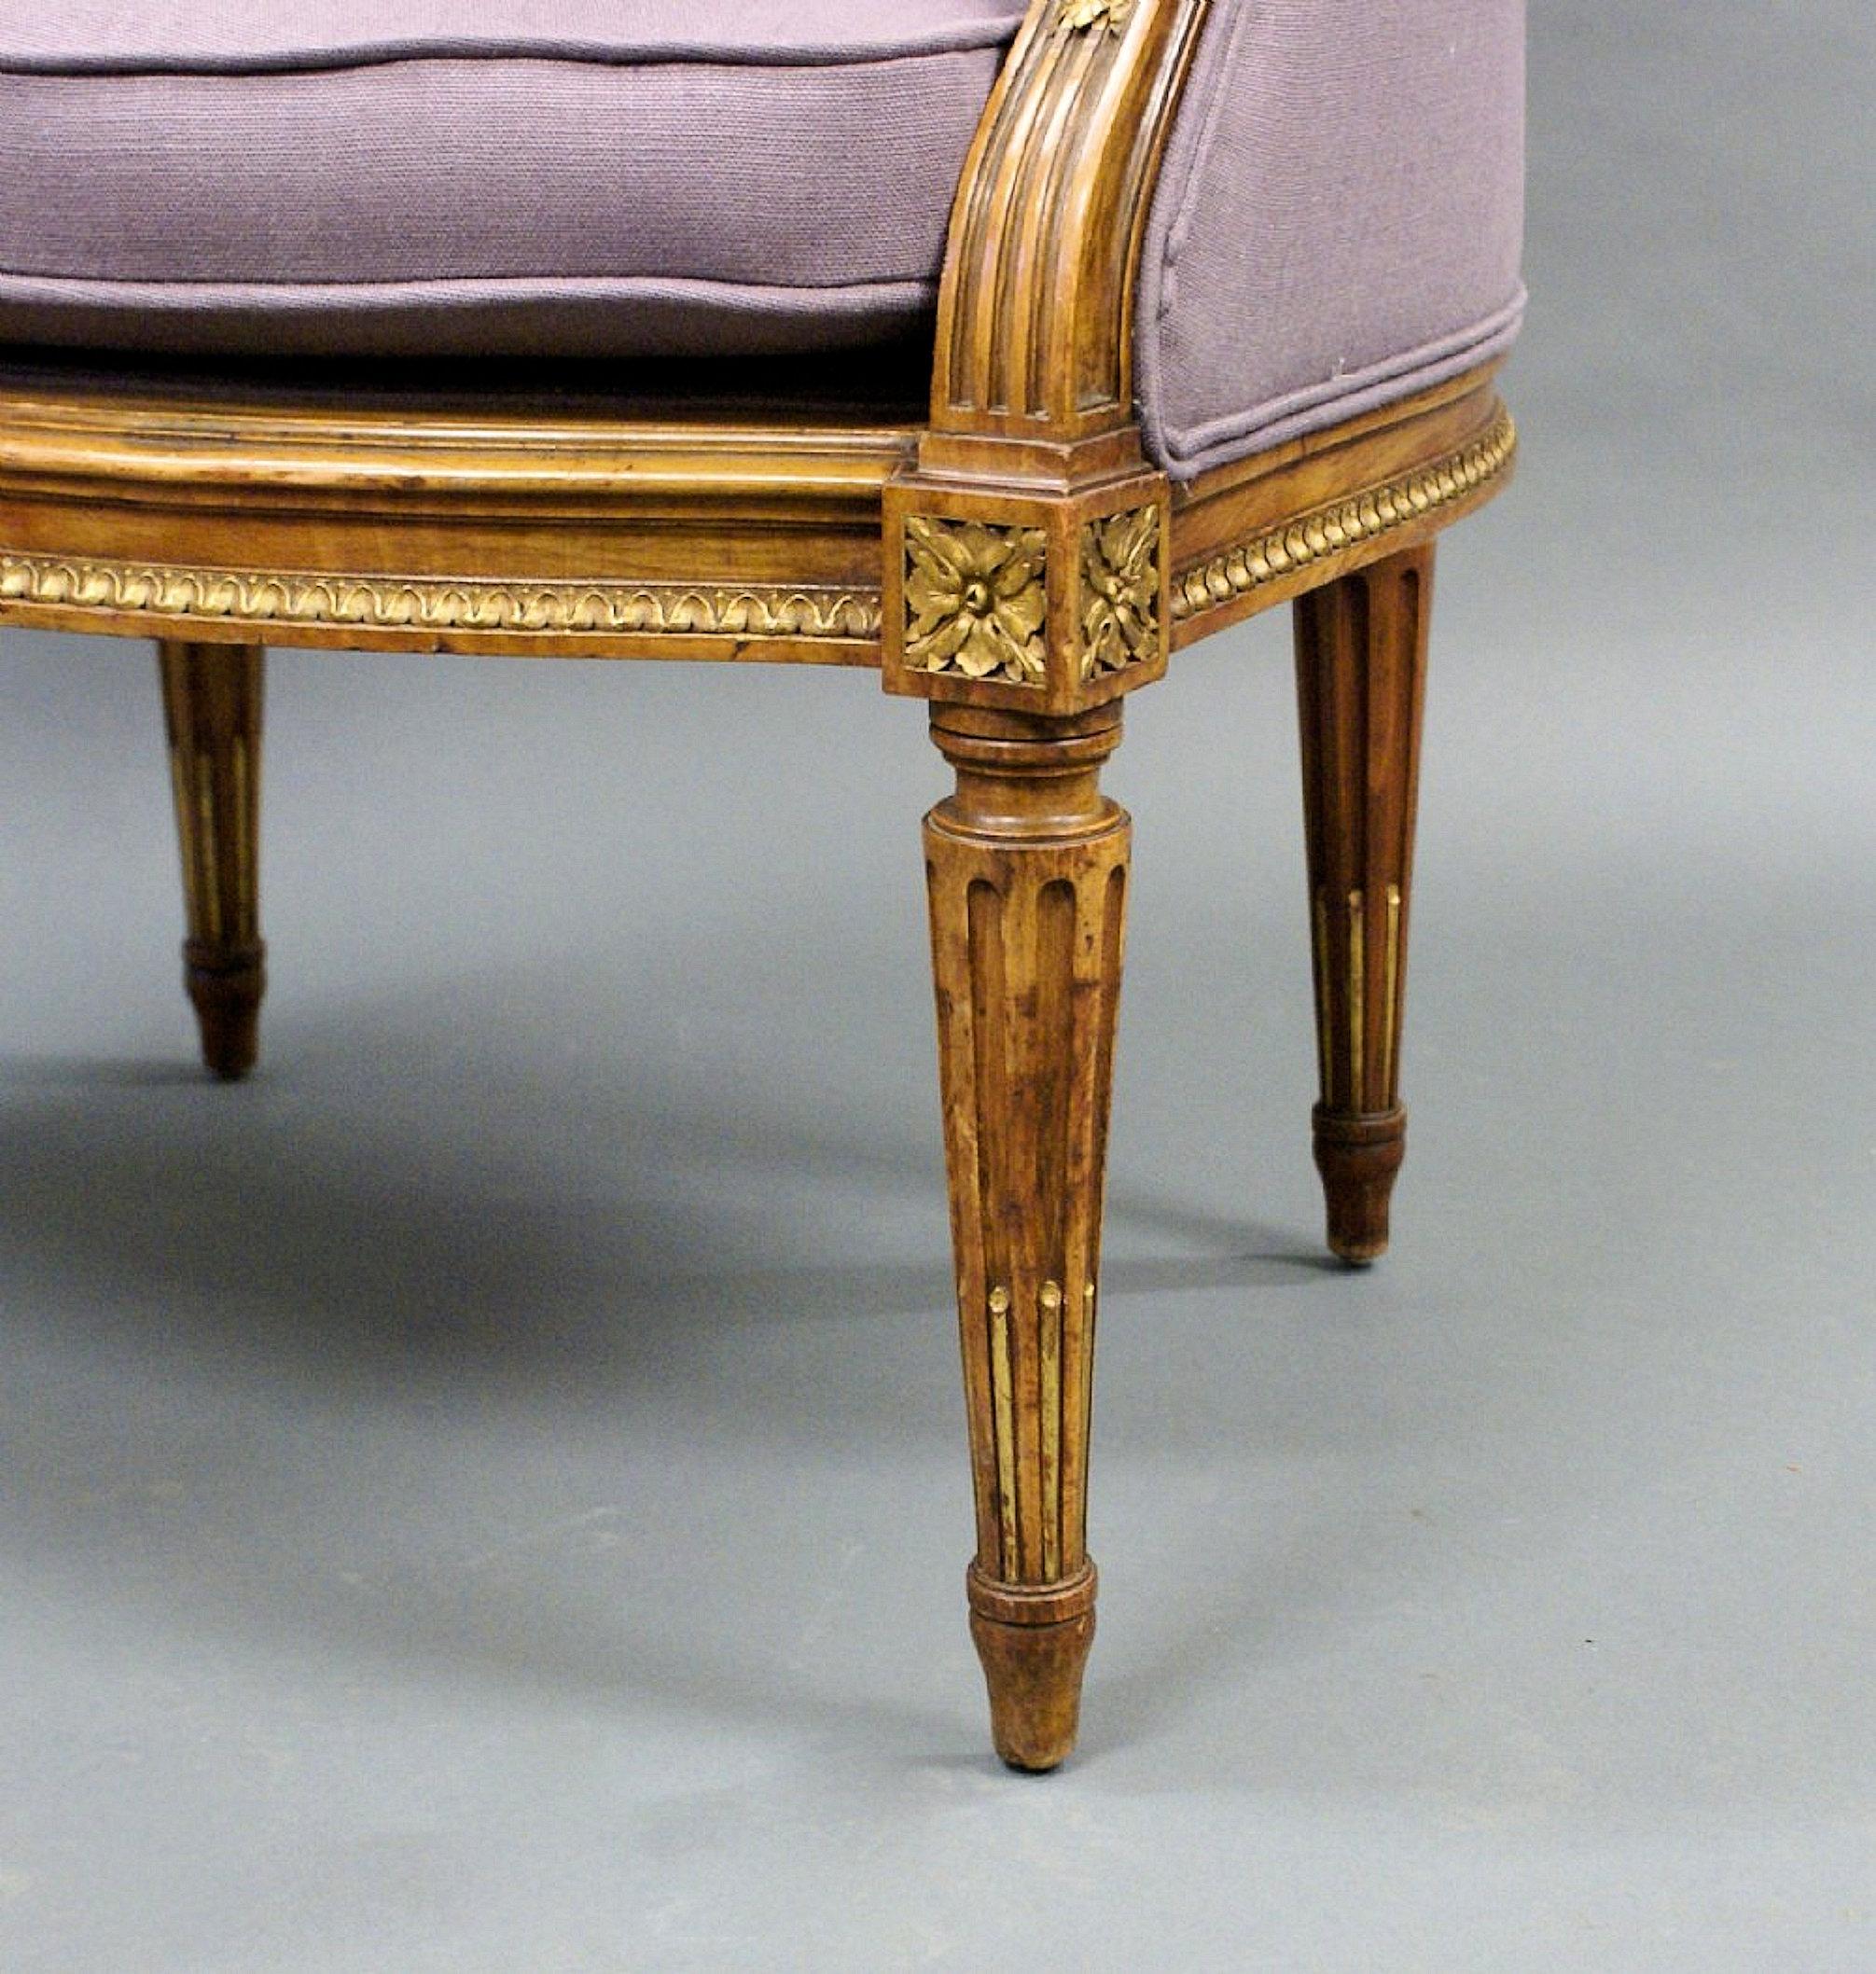 Dieser wunderschöne und sehr bequeme französische Sessel aus dem 19. Jahrhundert steht auf gedrechselten und kannelierten Beinen und hat eine geschnitzte Zierleiste um den äußeren Rahmen. Der Stuhl wurde vor kurzem mit einem weichen, lilafarbenen